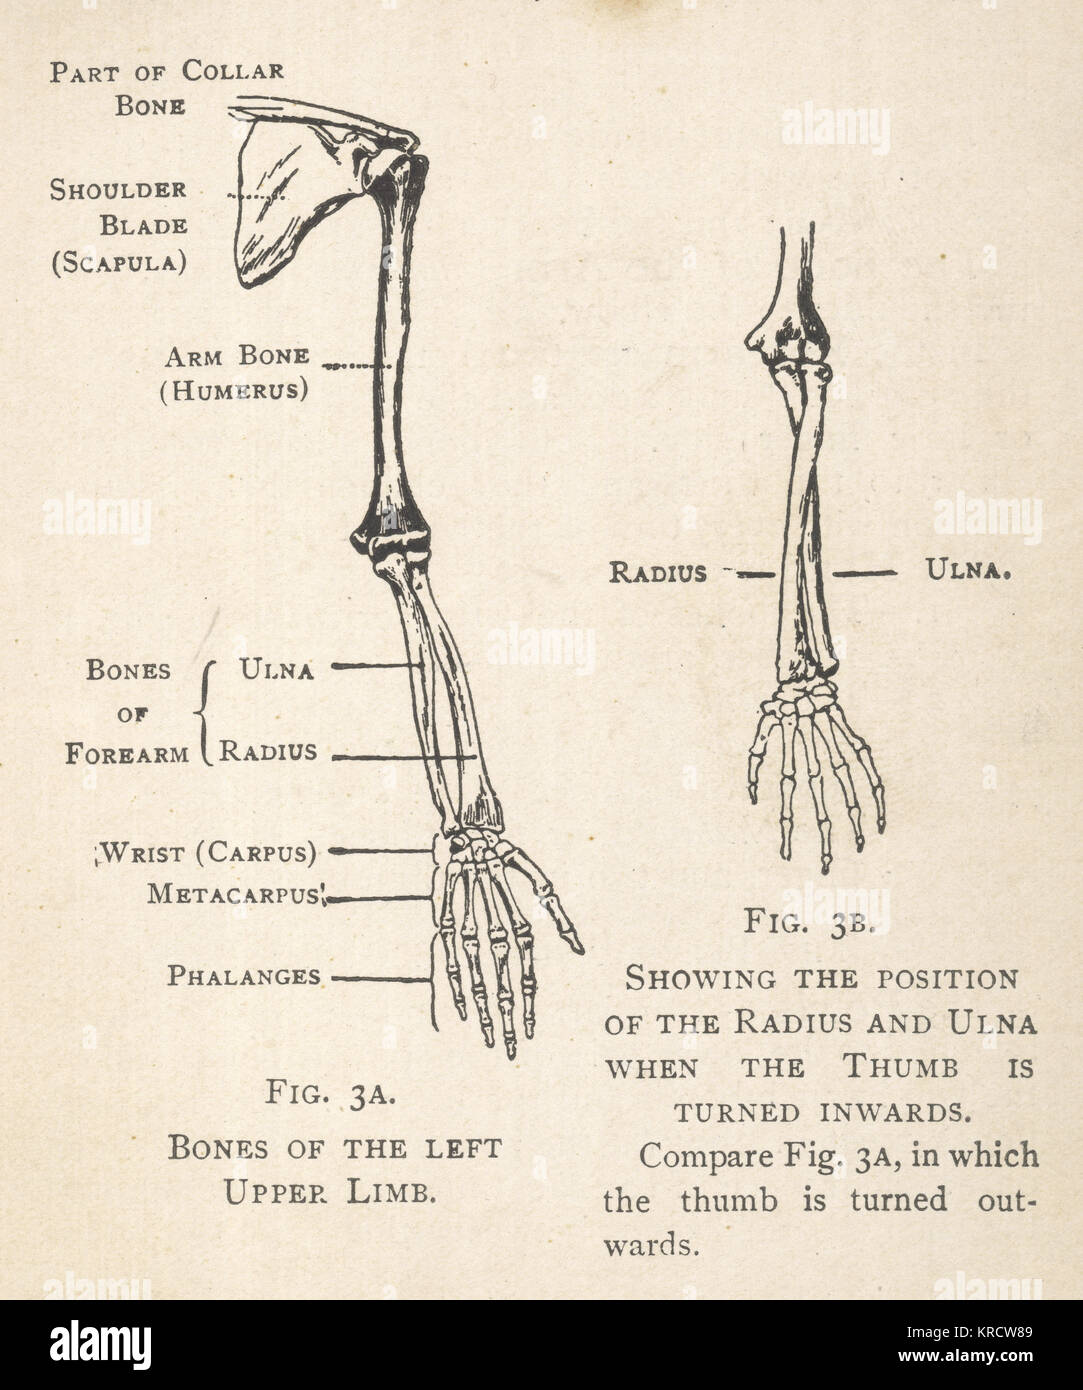 Los diagramas de los huesos del brazo y de la mano izquierda, mostrando la  posición del radio y cúbito cuando el pulgar está girada hacia adentro. El  omóplato y parte de la